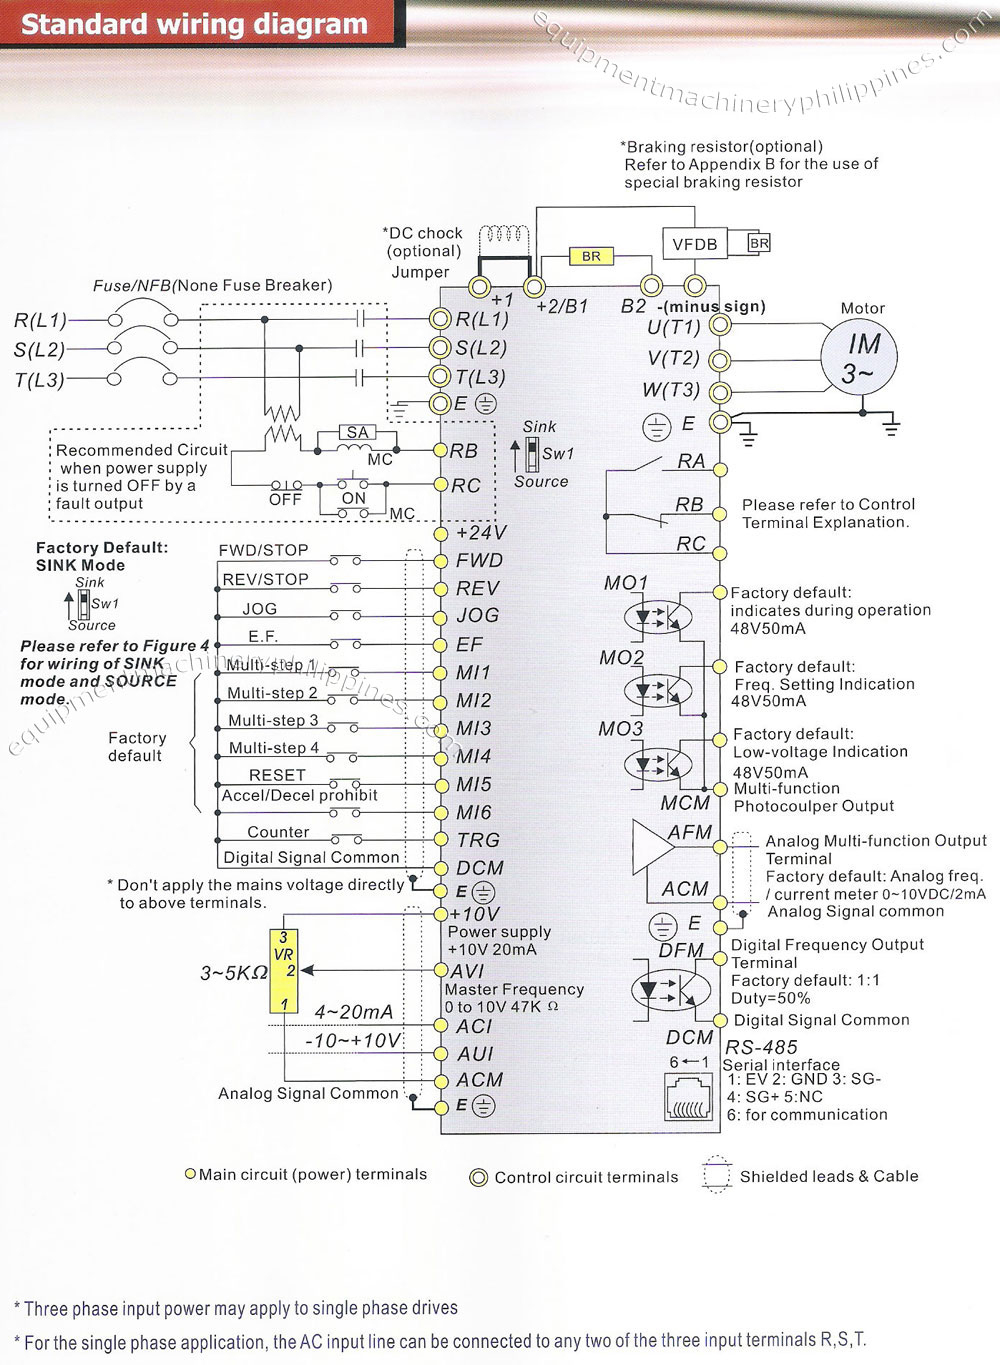 Delta Vfd B Series Standard Wiring Diagram Philippines - Vfd Wiring Diagram